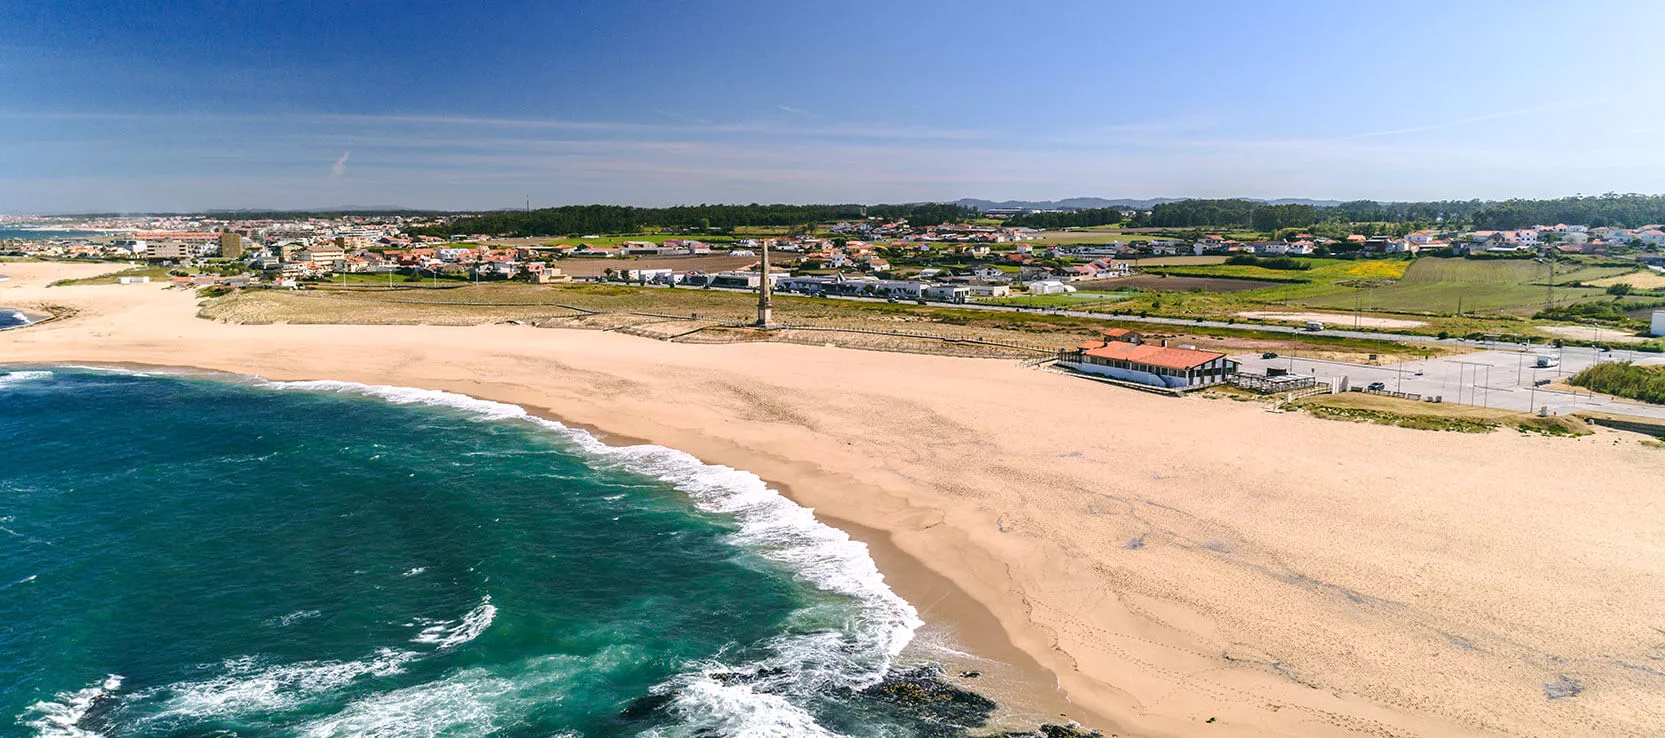 Leca da Palmeira Beach in Portugal, Europe | Surfing,Beaches - Rated 4